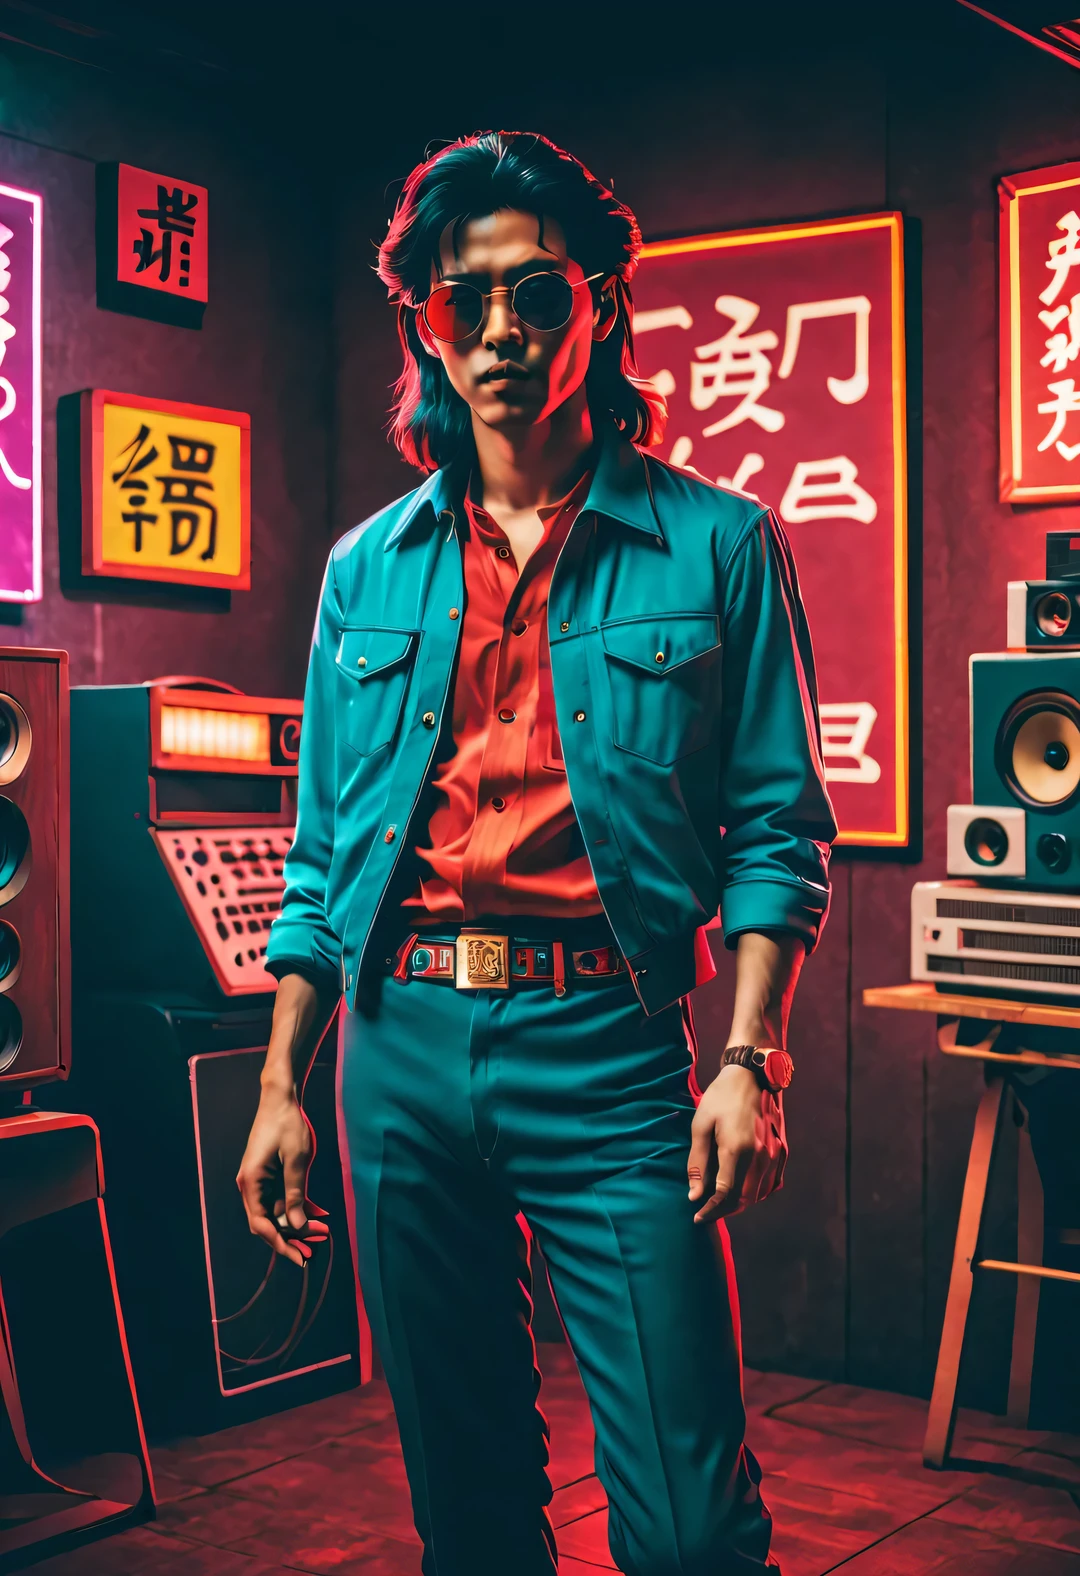 （1980년대 한자 디자인），매우 통일된 CG 장면 디자인，증기파 스타일,증기파 스타일，복고풍 스타일，
（1980년대 로큰롤 댄스홀에 있는 중국 젊은이들），（전신），（긴 머리와 큰 파도），（구레나룻의 털이 매우 길다.）（남성복을 입으세요&#39;1980년대 중국에서 유행했던 붉은 격자무늬 셔츠），（파란색 플레어 팬츠），（1980년대에 유행했던 금테 비행사 안경을 착용해 보세요.），（그의 손에는 1980년대의 대형 빈티지 테이프 레코더가 들려 있습니다..），standing next to each other with a 연설자, 연설자, retro and 1 9 80년대 스타일, 1980년 스타일, 1 9 80년대 스타일, 1980년대 스타일,오래된 벽돌 벽, 8 0 스타일, 1970년대 이후, 80년대 스타일, 80년대 스타일，풍부한 세부정보，中国1980년대 스타일，
증기파 스타일, 아름다운 상세한， Lo-Fi 사진 스타일, 레트로퓨처리즘 스타일, 울트라 모던 스타일, 빈티지 사진 스타일, 사이버펑크 스타일, 디스토피아 스타일，글리치 아트 스타일, 아름다운 상세한